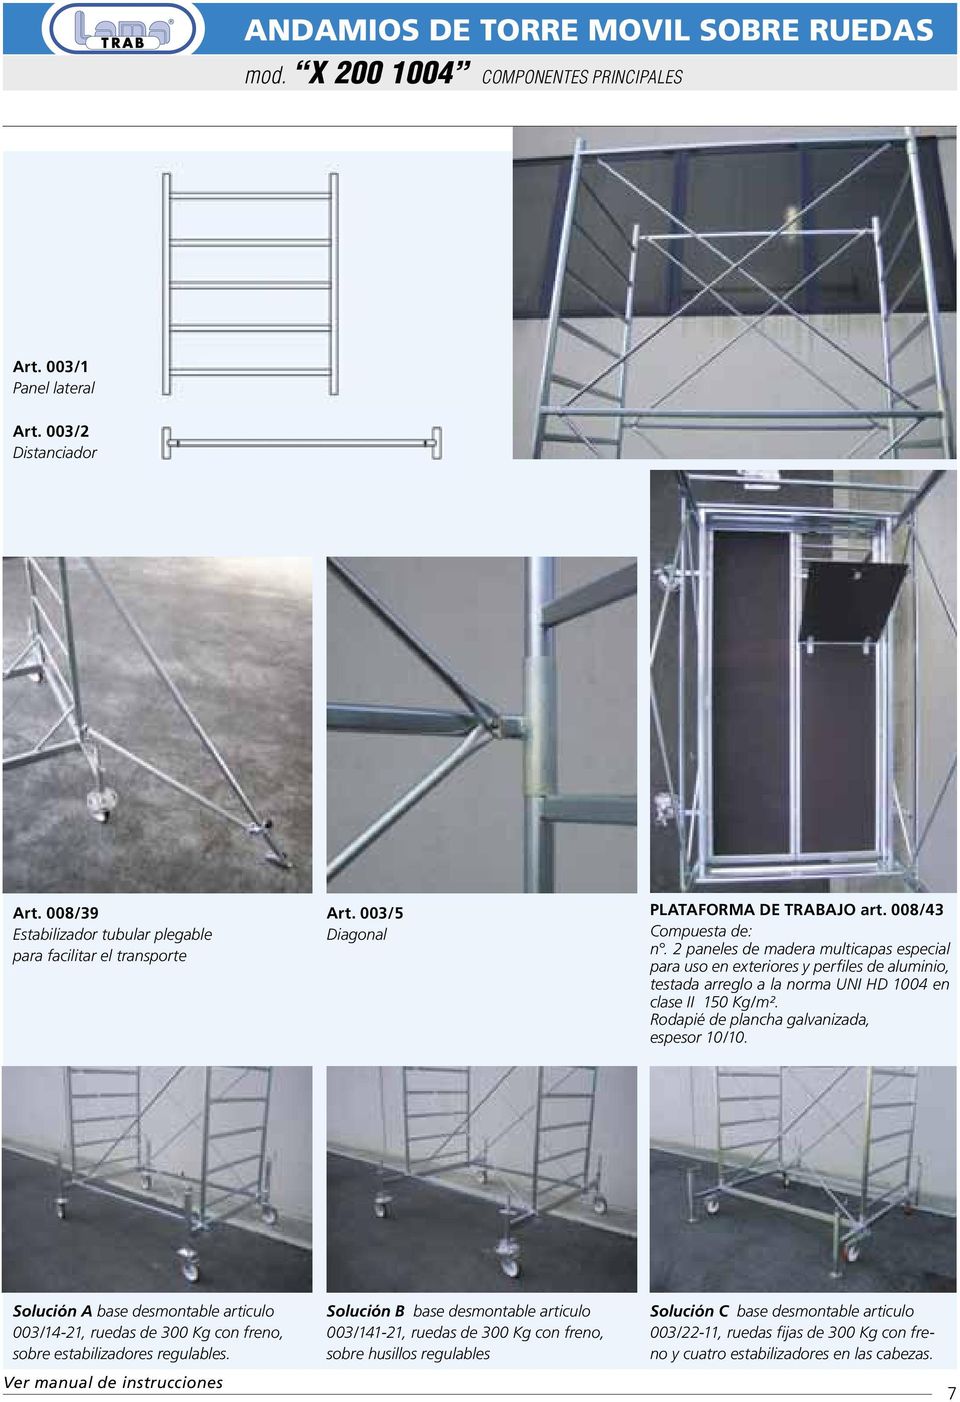 2 paneles de madera multicapas especial para uso en exteriores y perfiles de aluminio, testada arreglo a la norma UNI HD 1004 en clase II 150 Kg/m². Rodapié de plancha galvanizada, espesor 10/10.